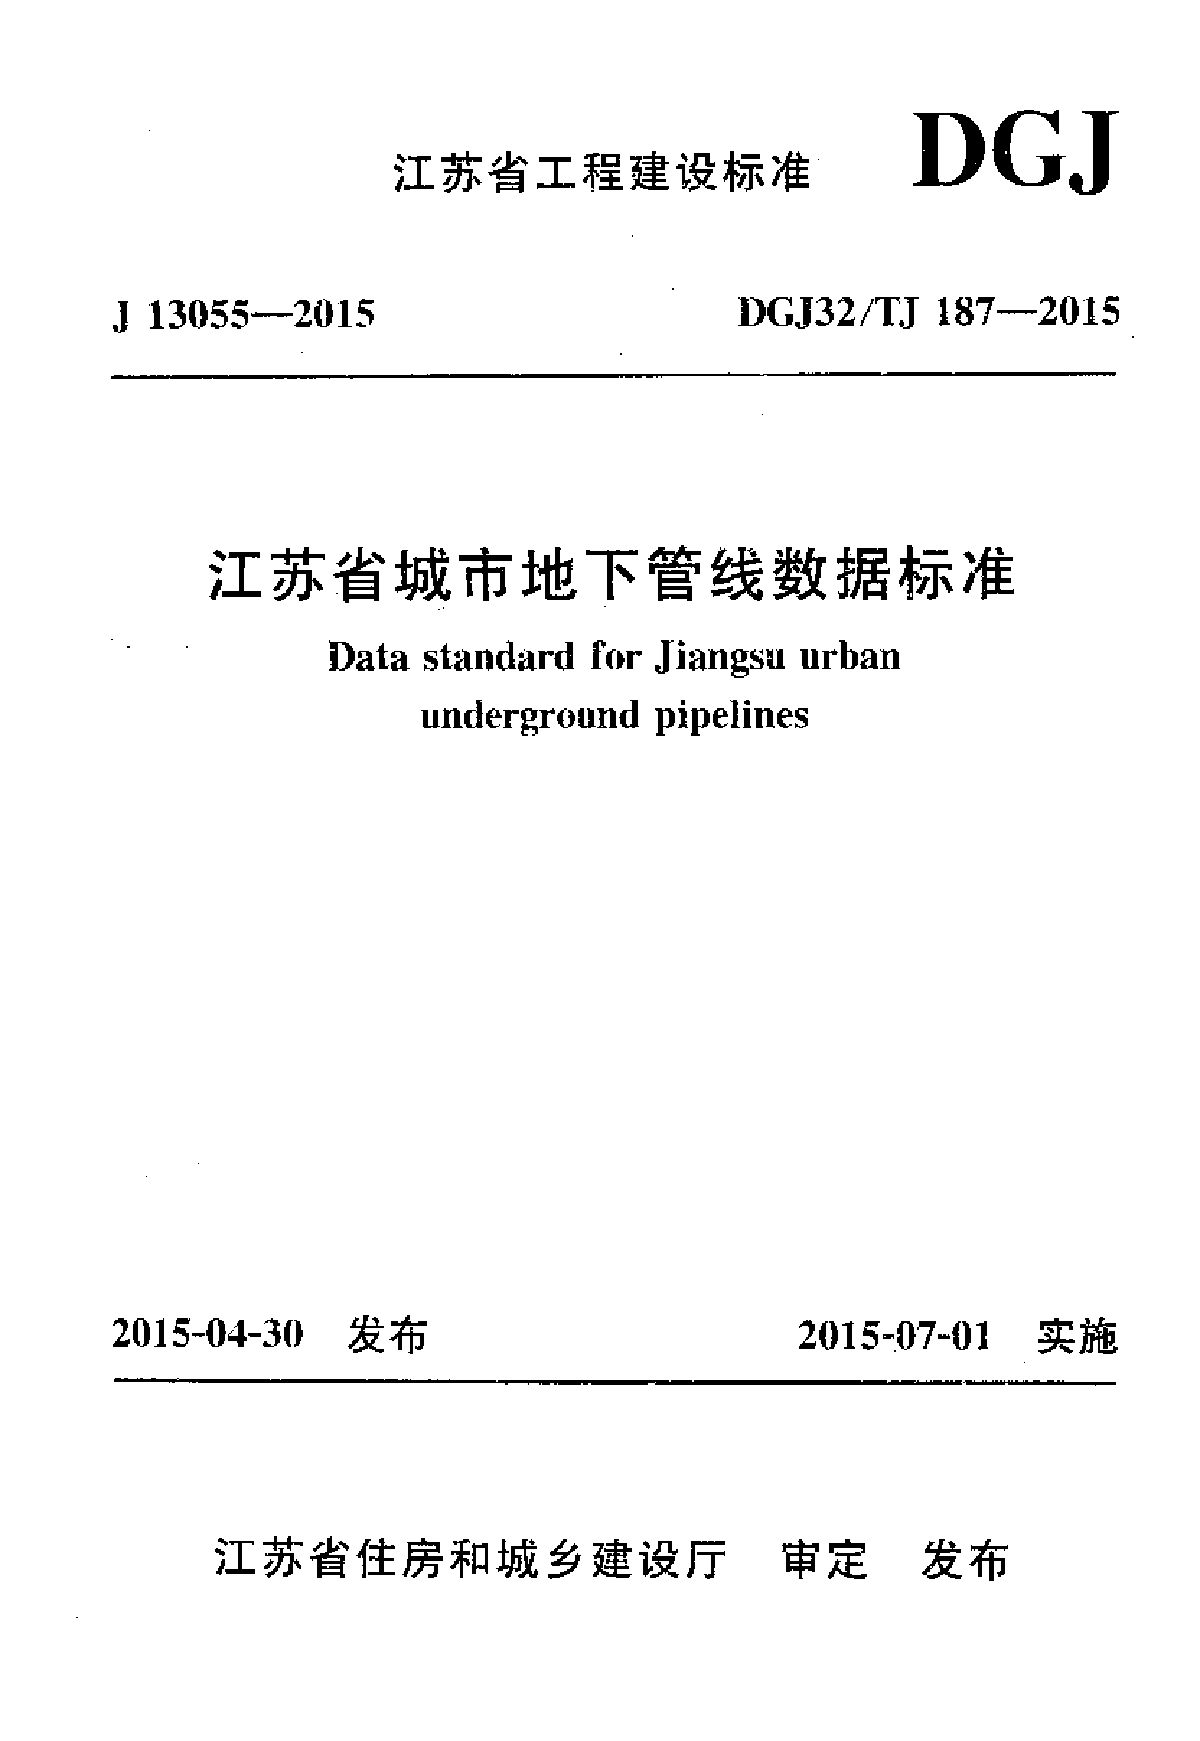 江苏省城市地下管线数据标准 DGJ32/TJ187-2015